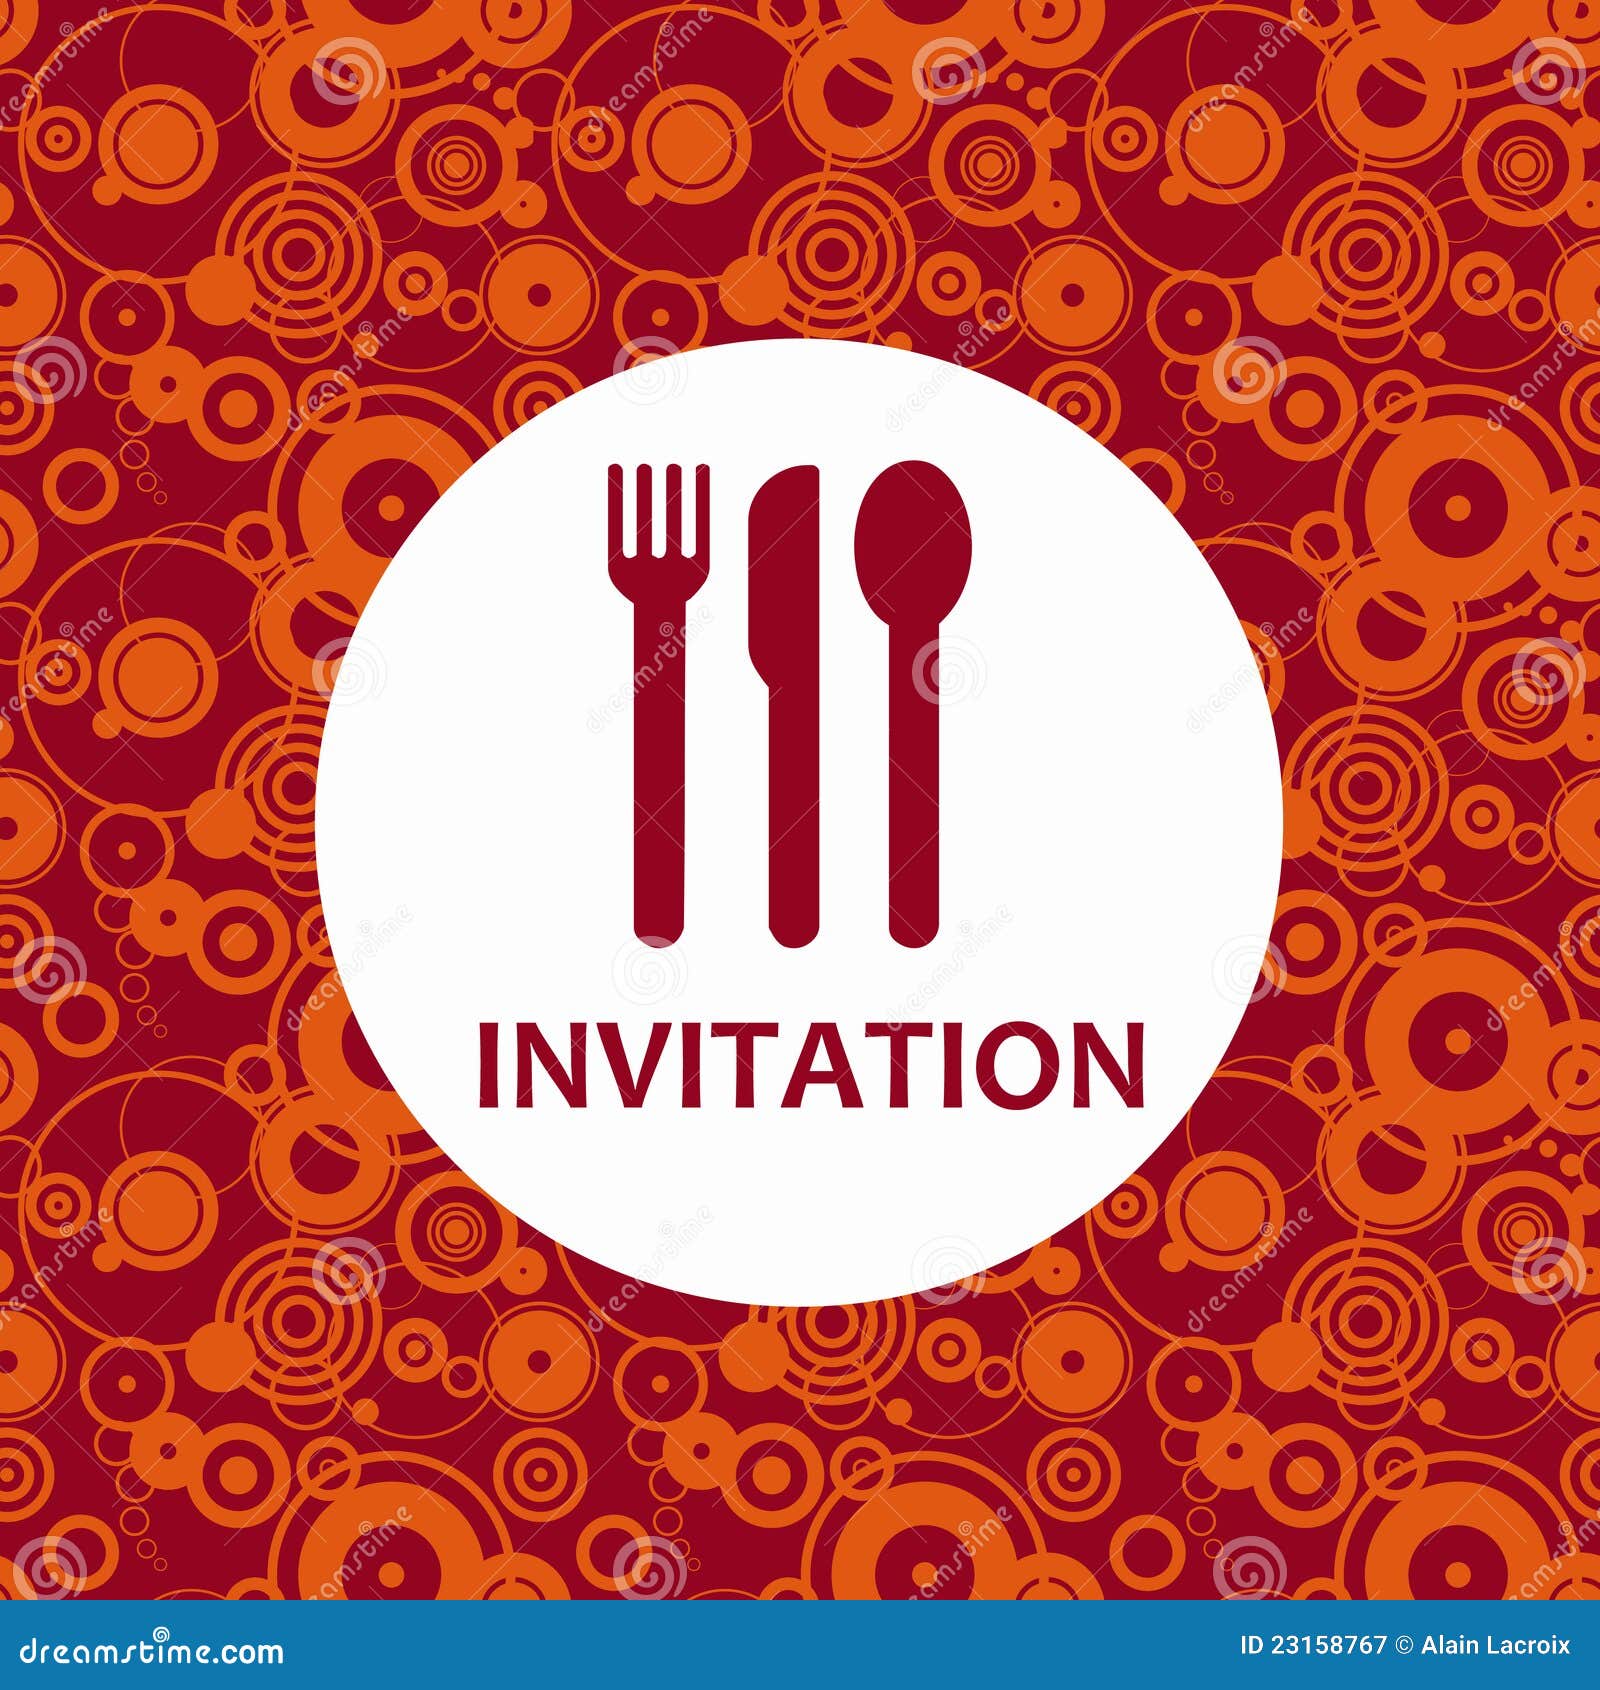 clipart invitation diner - photo #4